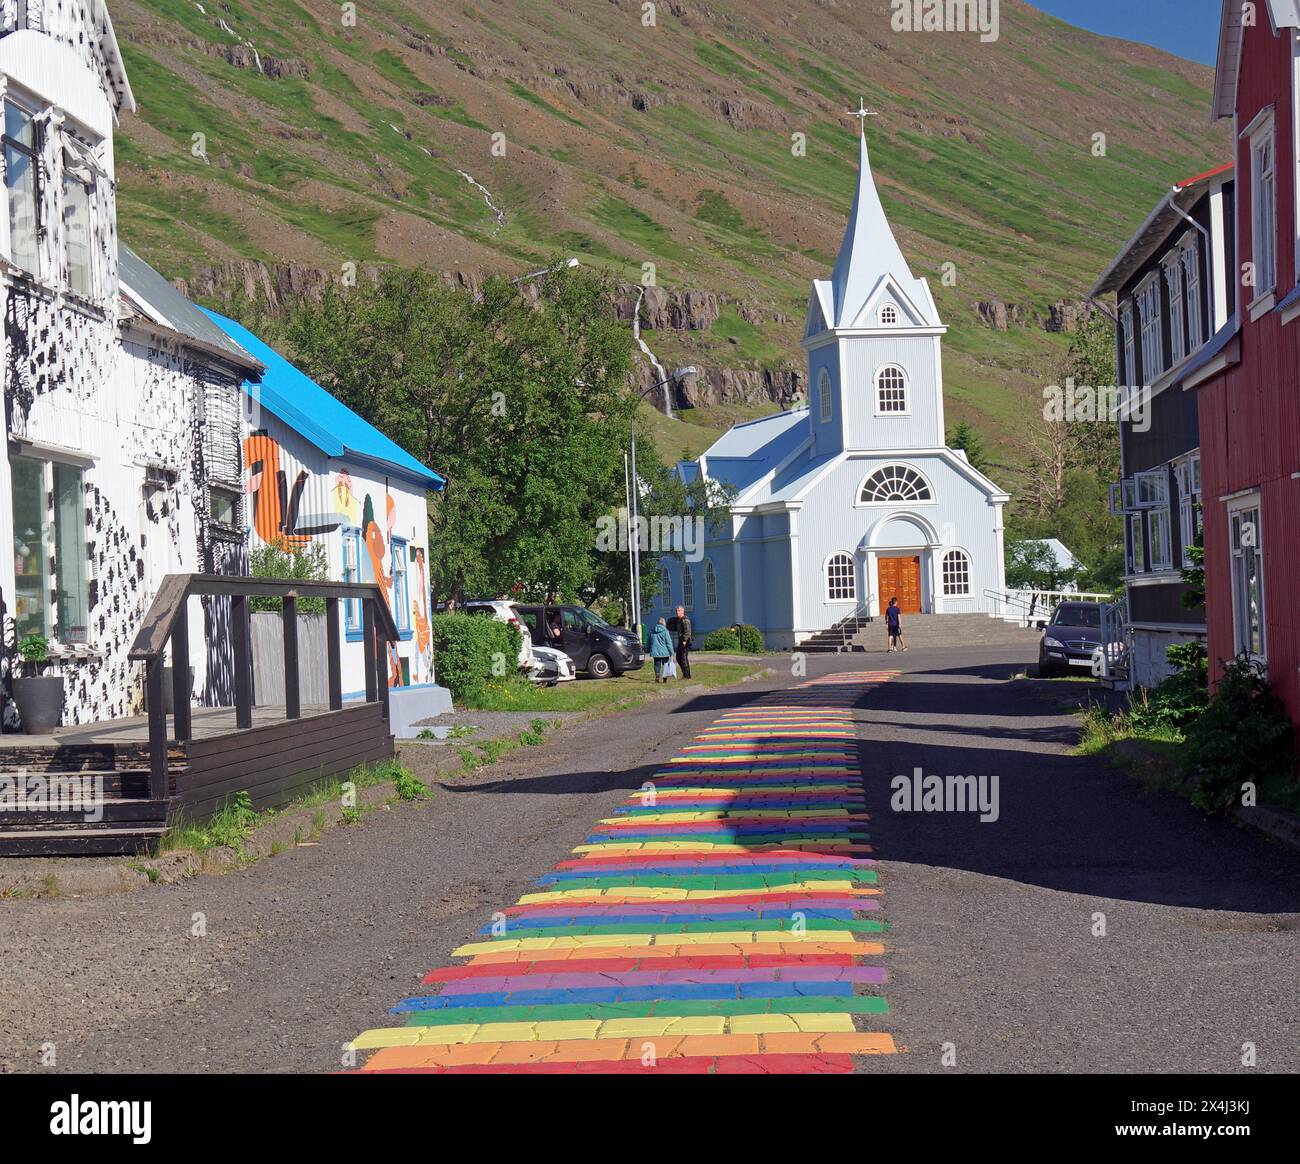 Petite église et maisons bordent une rue décorée de couleurs arc-en-ciel, Seydisfjördur. Islande Banque D'Images